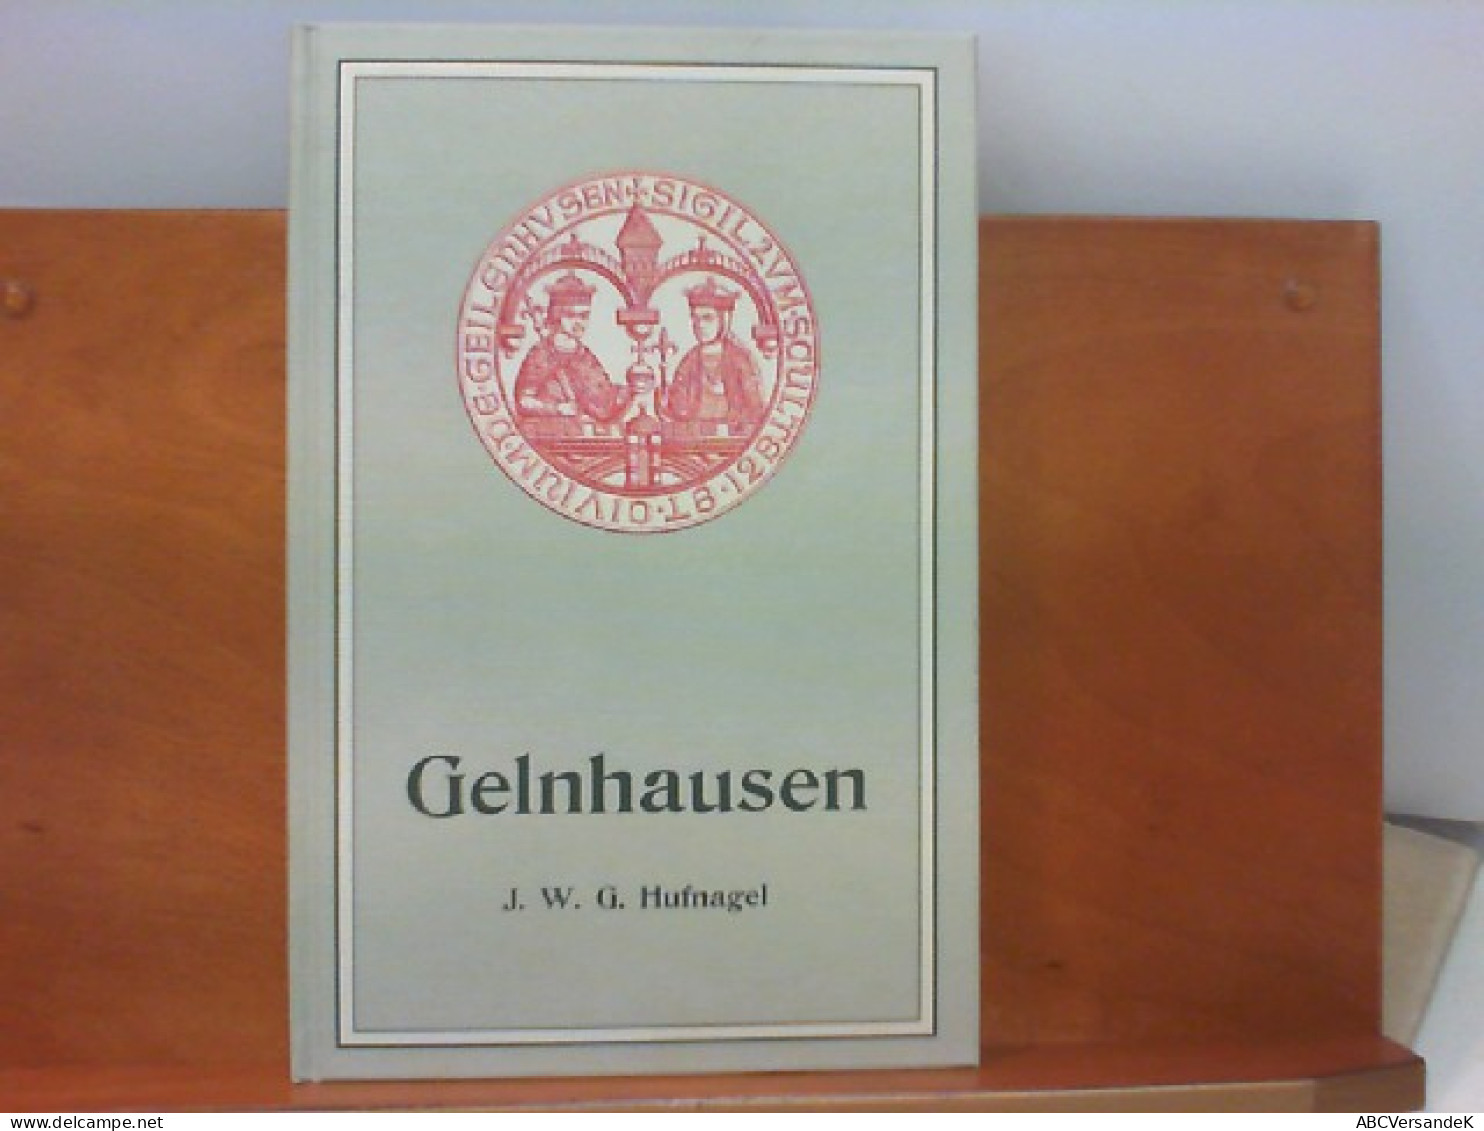 Gelnhausen - Nachdruck Der Ausgabe Gelnhausen 1900 - Hesse